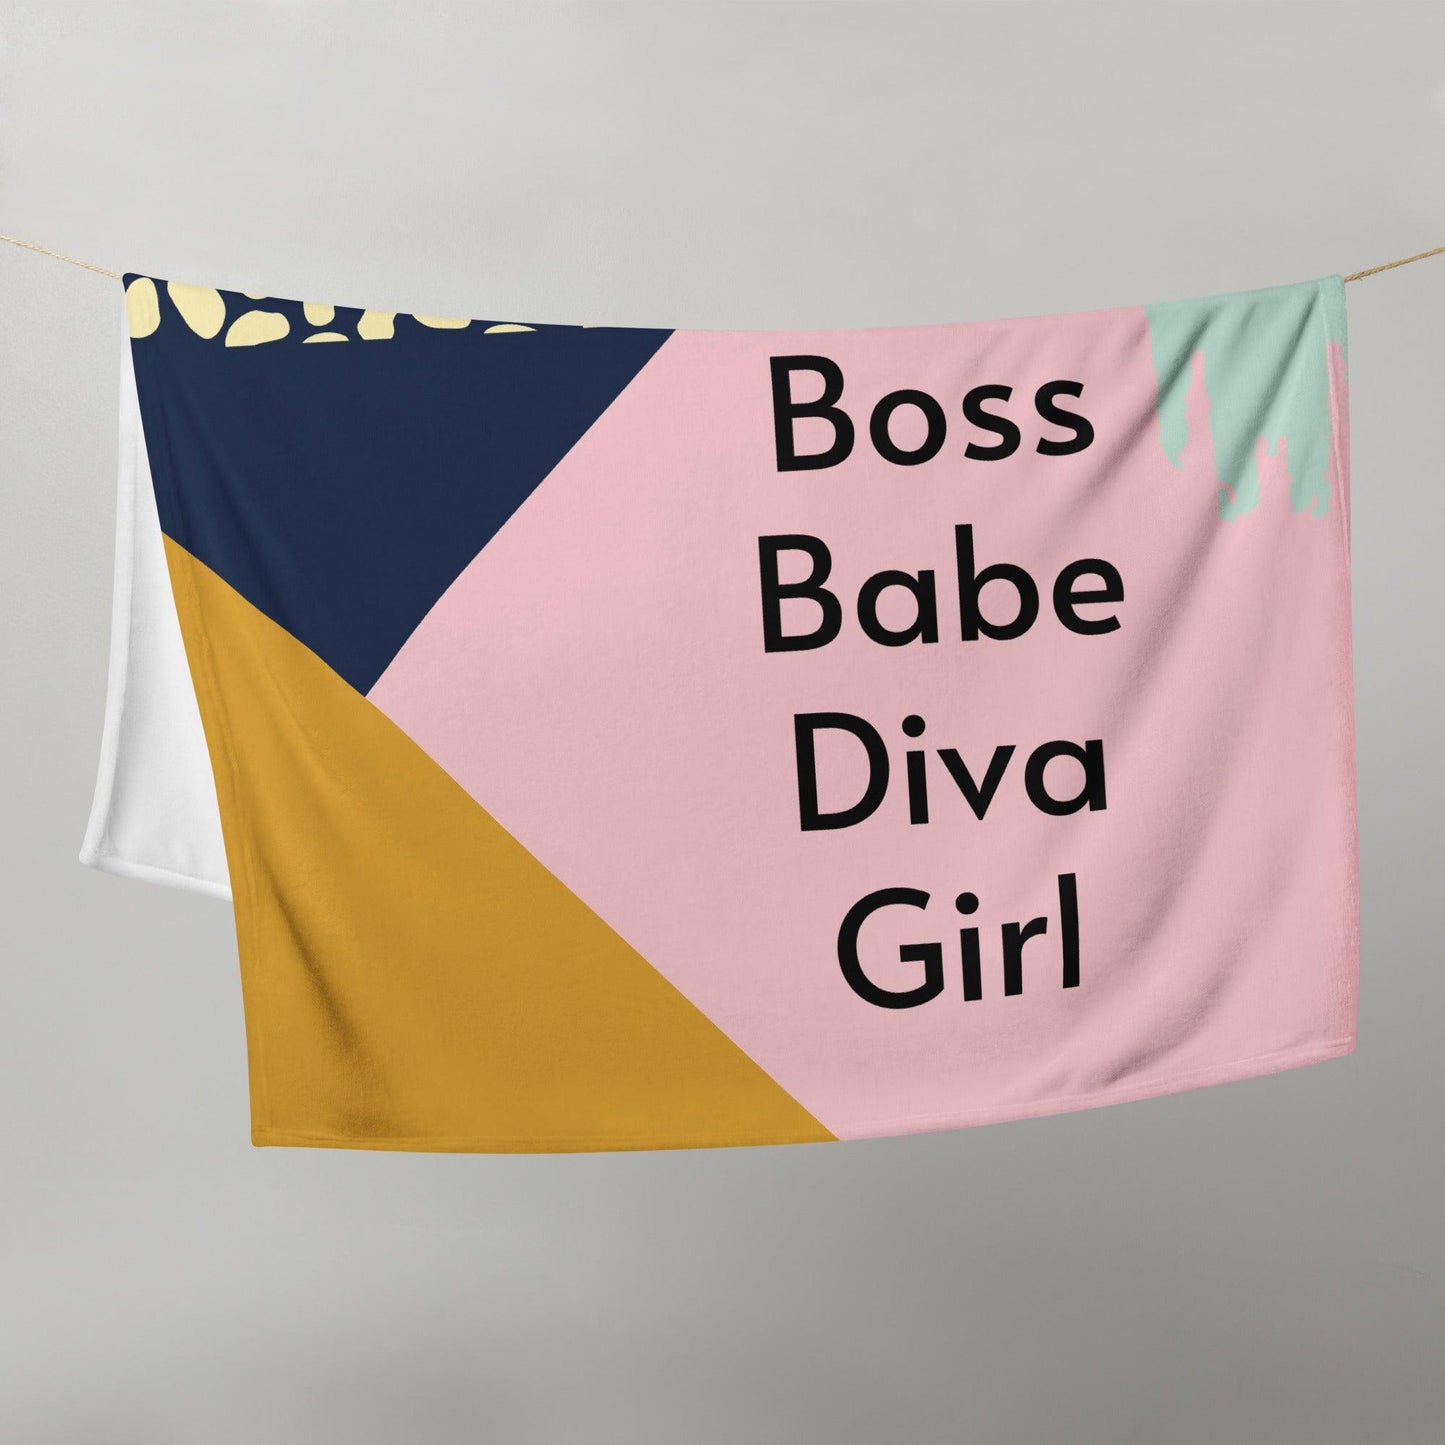 Boss Babe Diva Girl Throw Blanket